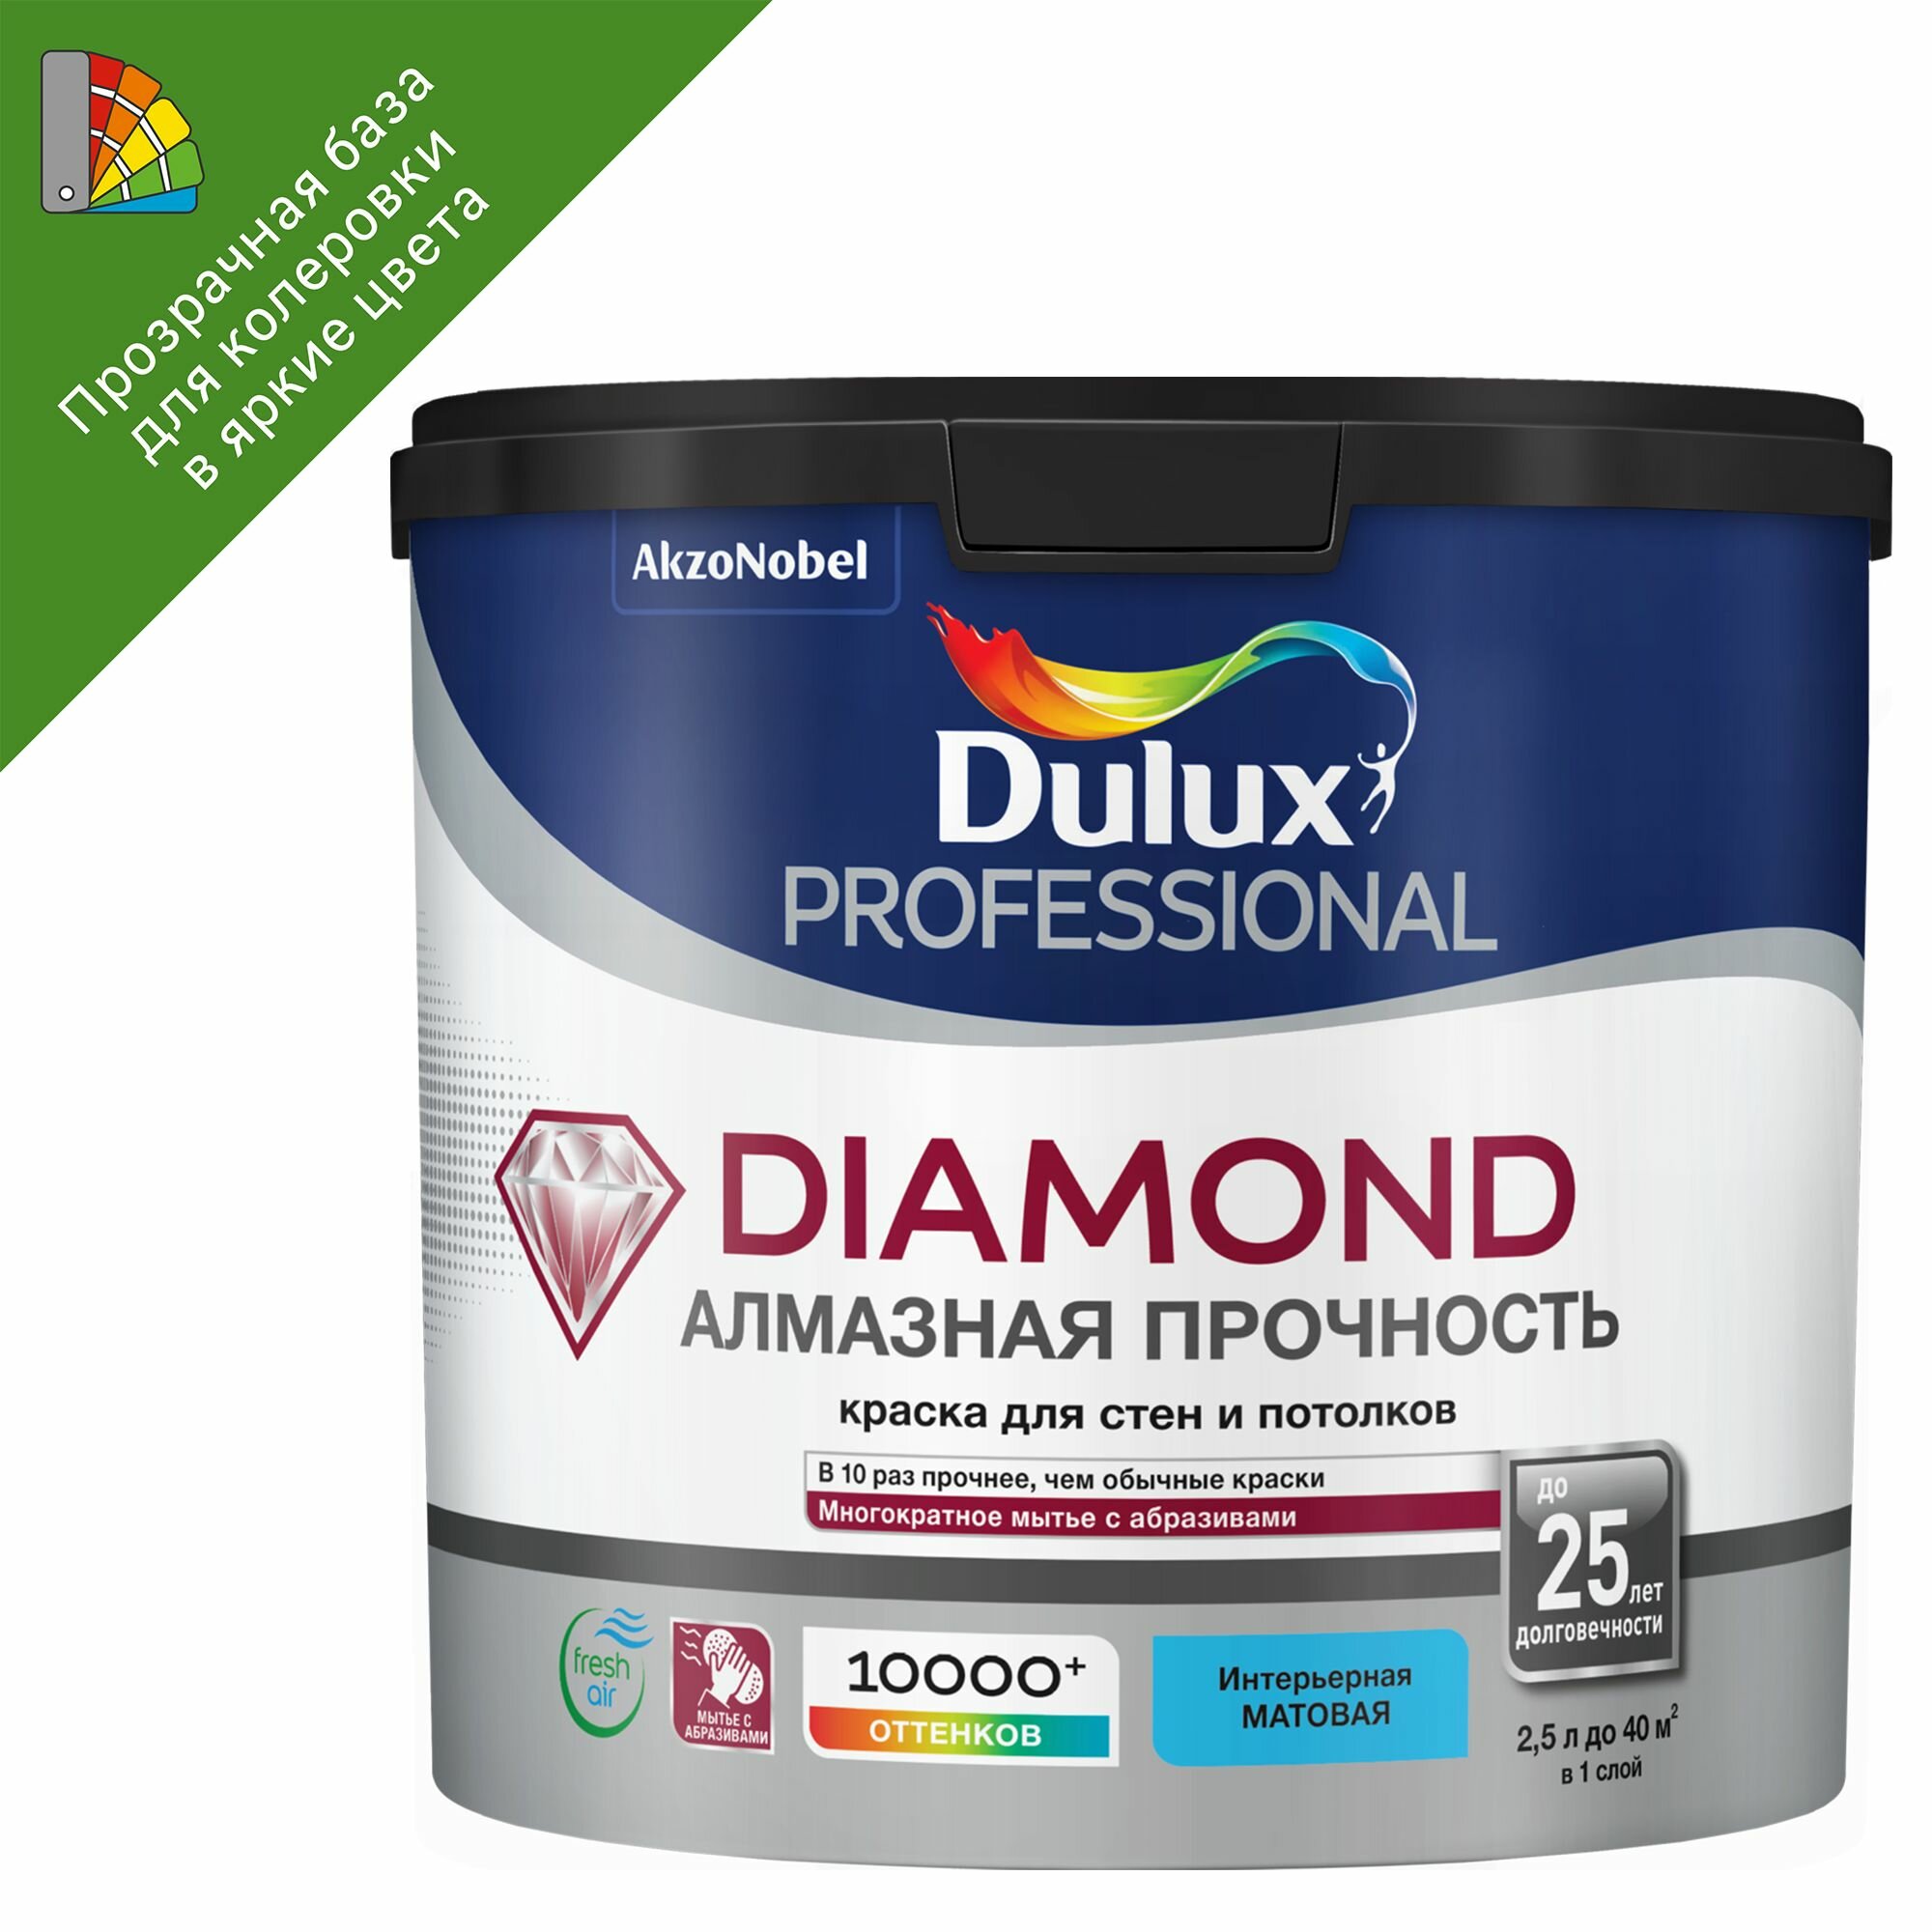 DULUX DIAMOND алмазная прочность краска для стен и потолков износостойкая мат база BC (225л)_NEW